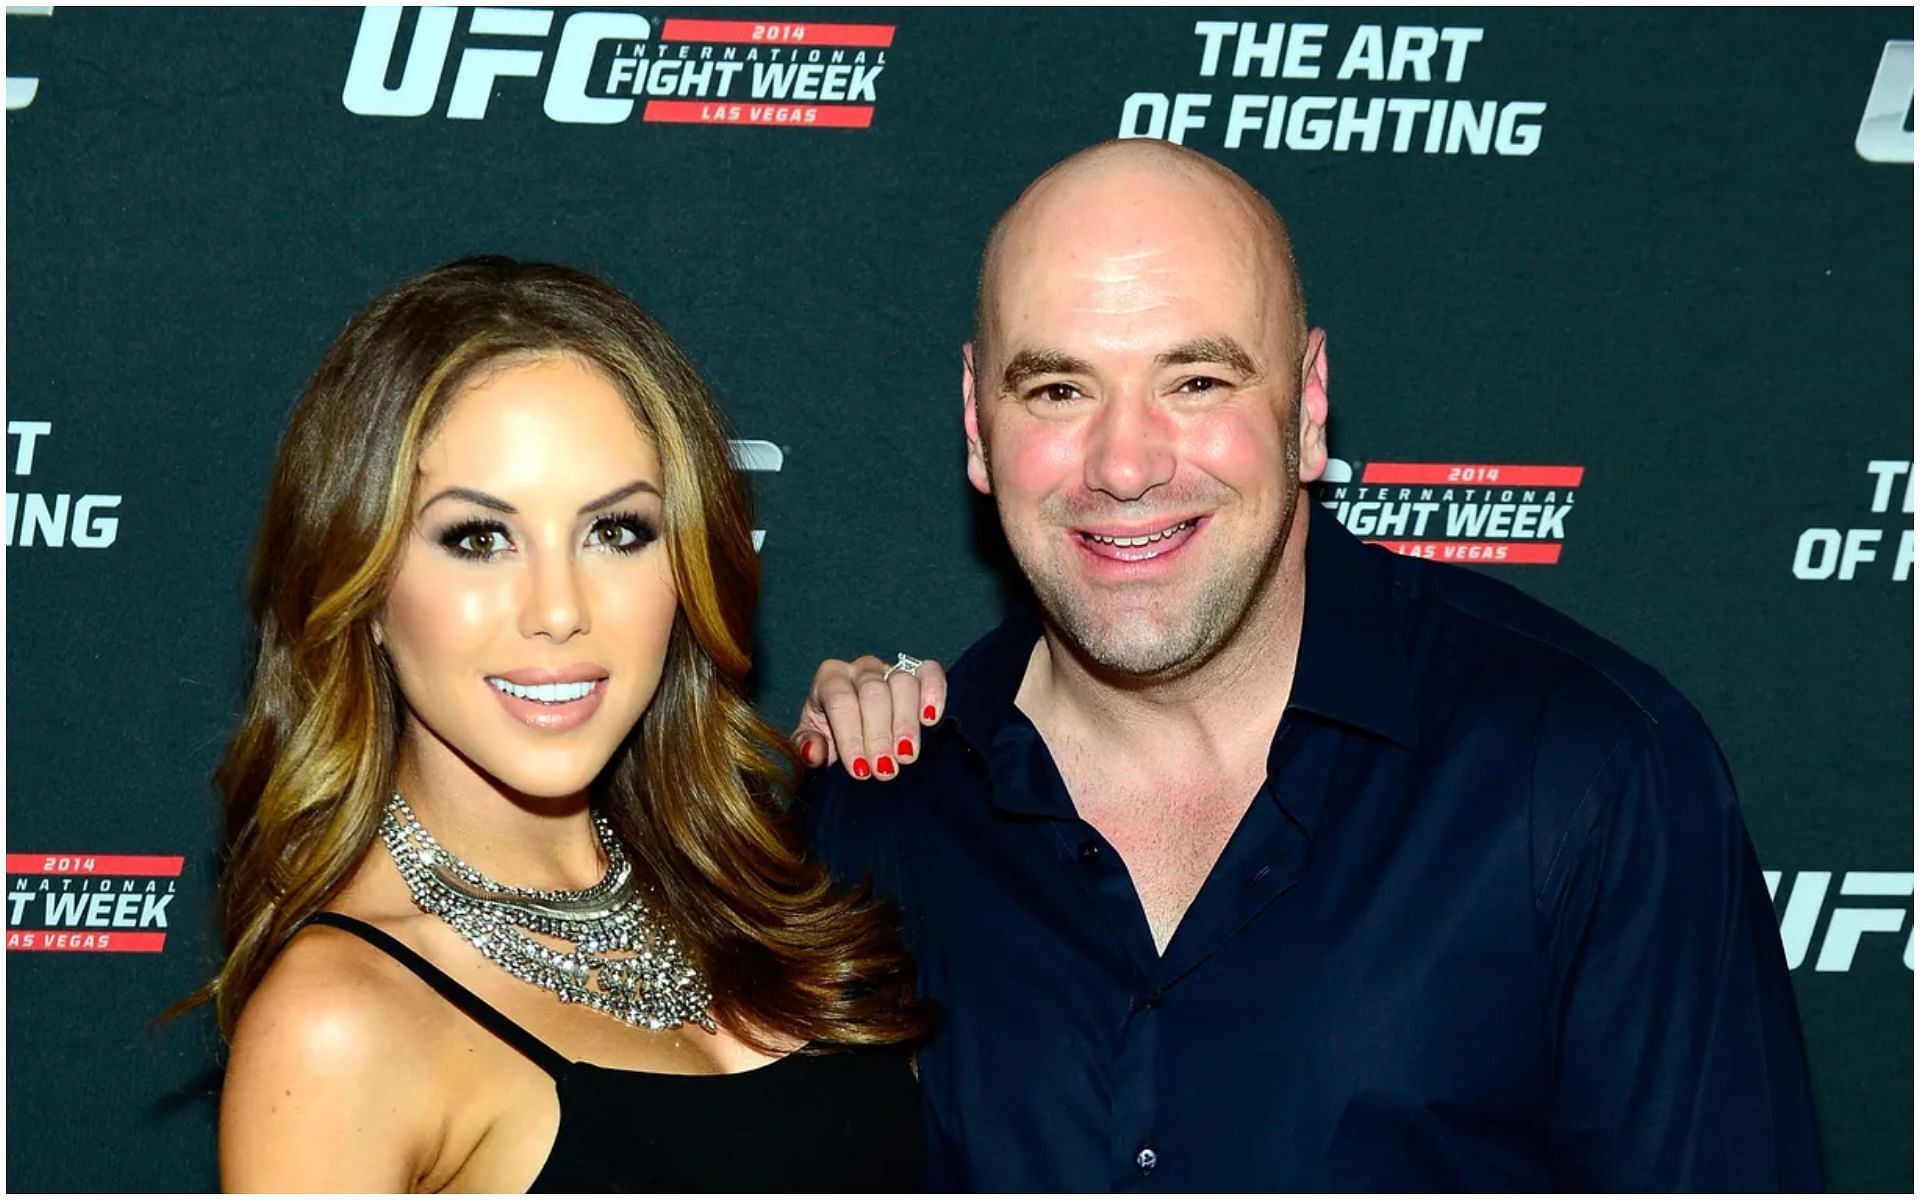 UFC president Dana White and ring girl Arianny Celeste